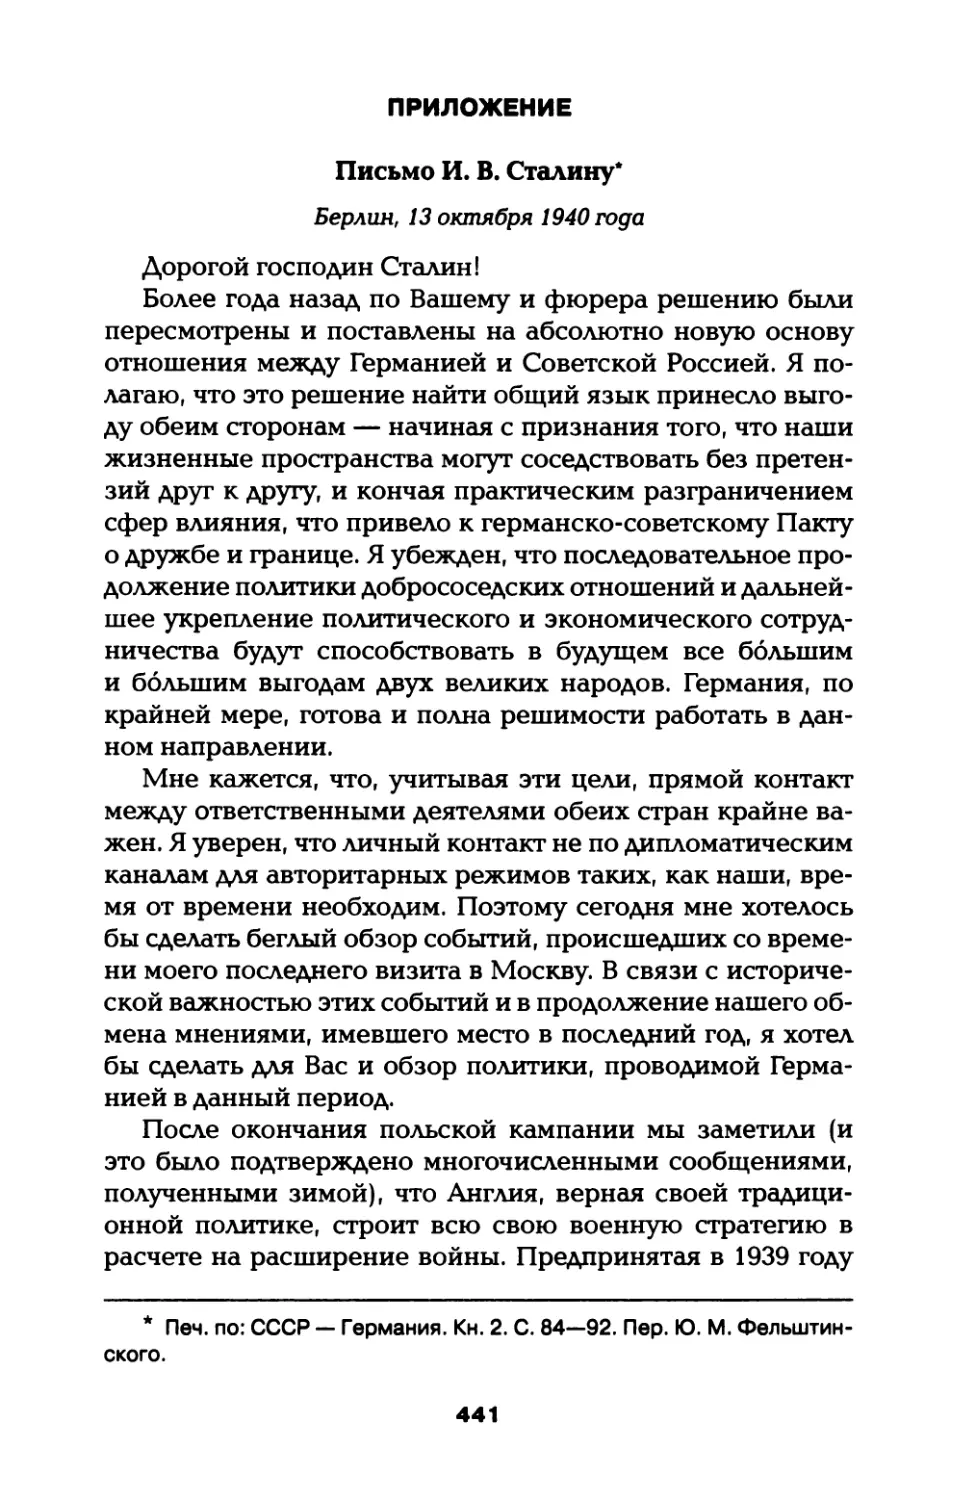 Приложение. Письмо И. фон Риббентропа И. В. Сталину